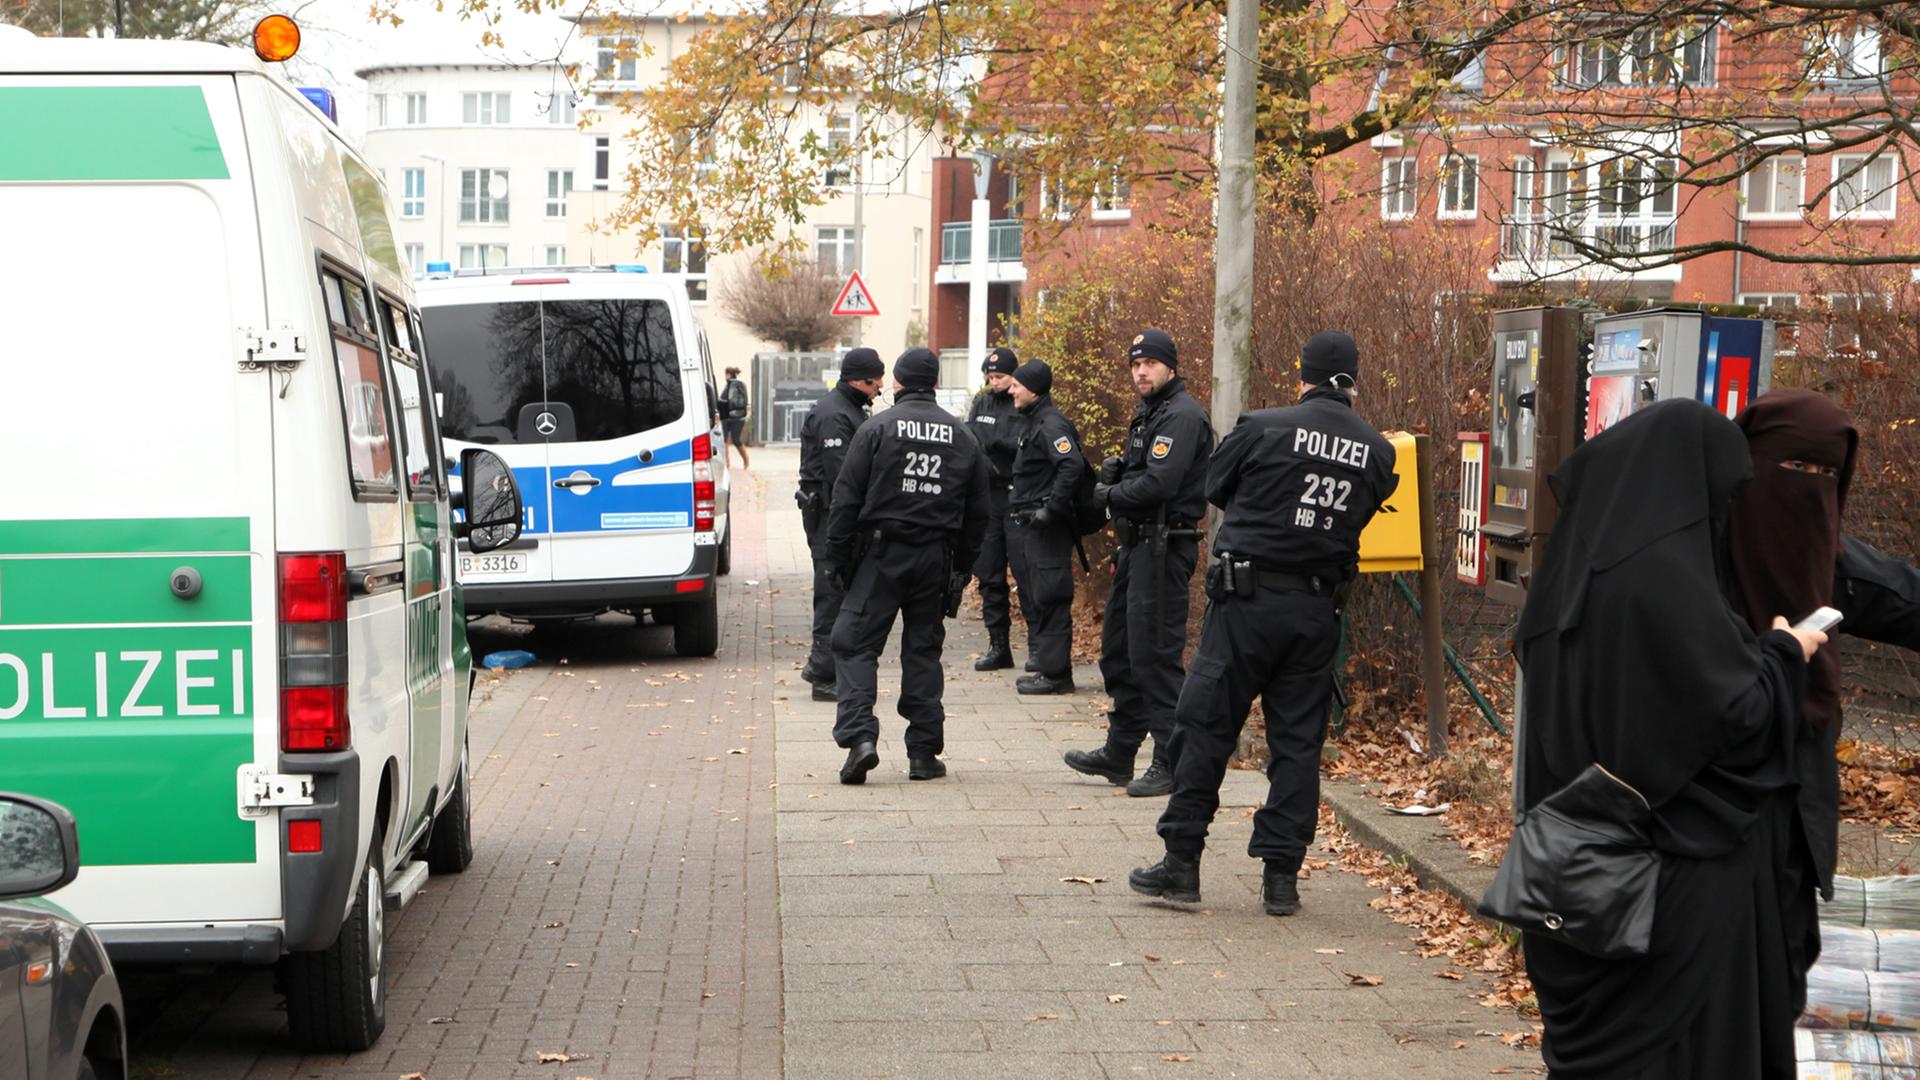 Polizeiwagen und Beamte stehen in Bremen während einer Durchsuchung vor dem salafistischen Kultur & Familien Verein (KuF) im Stadtteil Gröpelingen neben zwei Frauen, die vollkommen verschleiert sind.